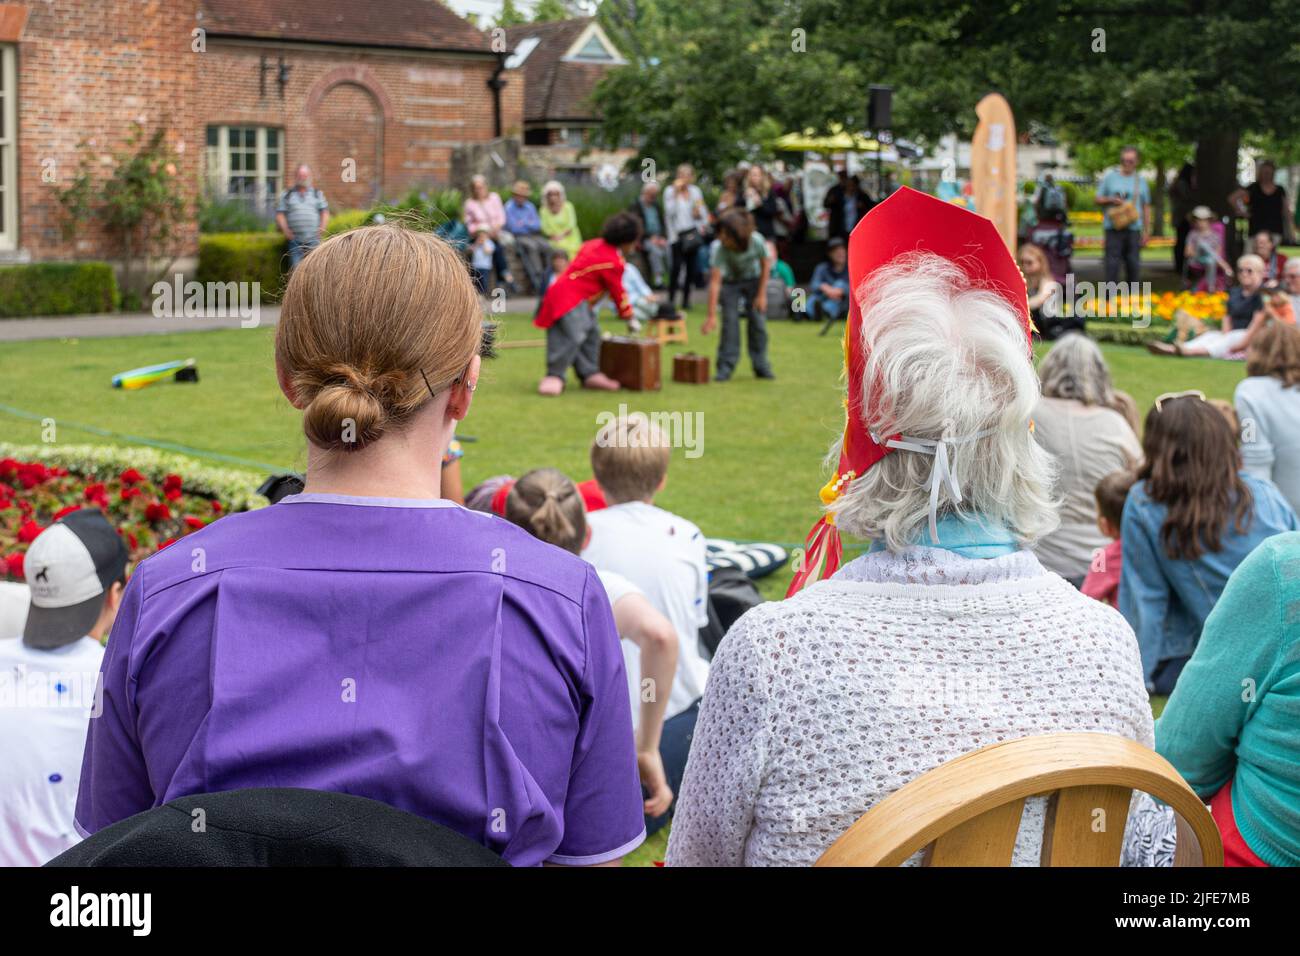 Trabajador de cuidado sentado con una señora mayor en un parque, viendo a un animador de payasos, Inglaterra, Reino Unido. Cuidador que ayuda a personas mayores con actividades sociales. Foto de stock